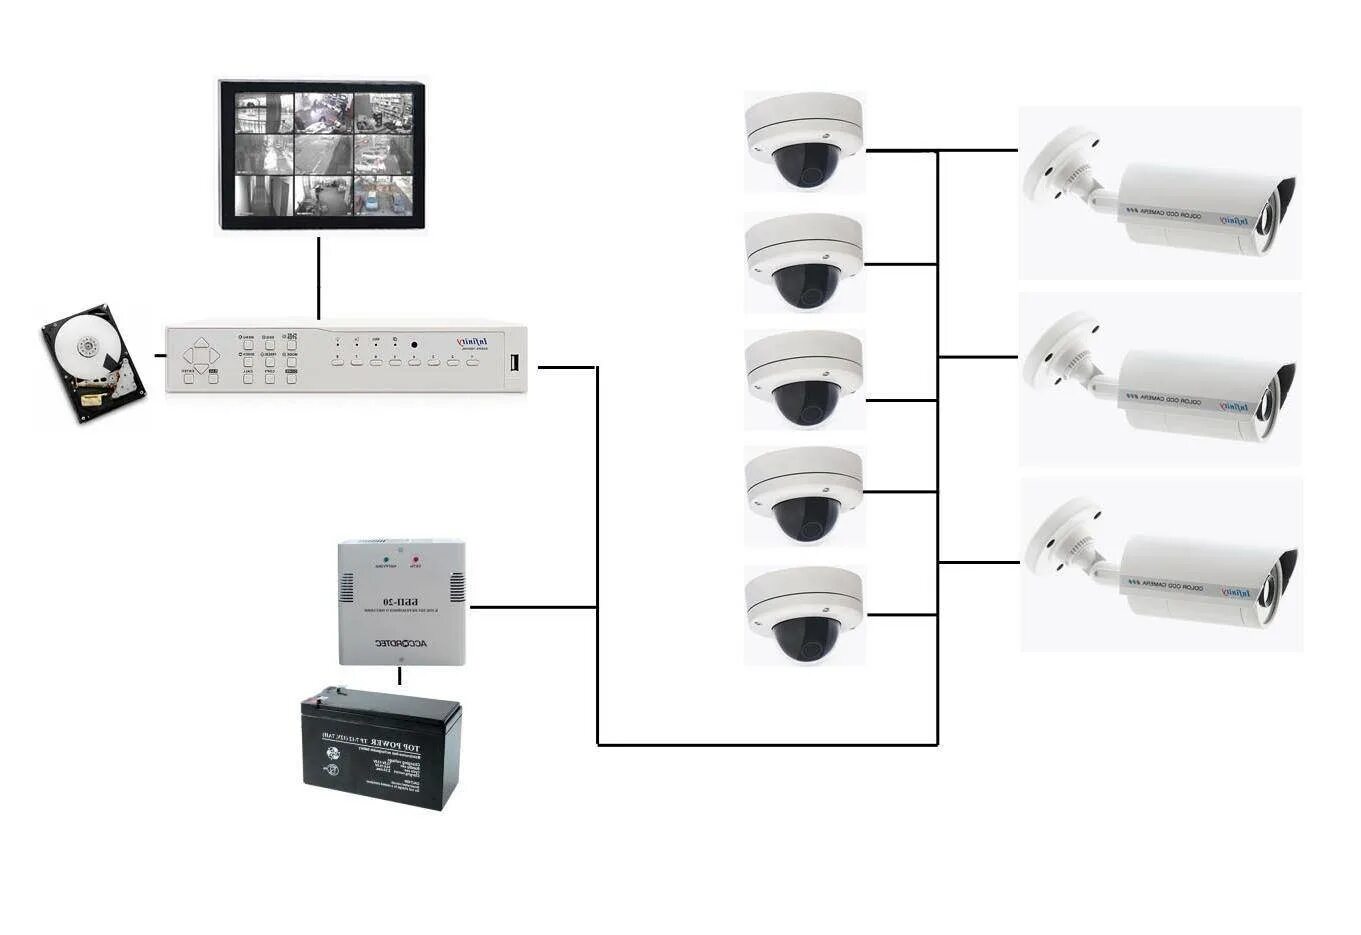 Безопасность системы камеры. Аналоговая камера видеонаблюдения схема расключения. Схема подключения AHD камеры видеонаблюдения. Структура аналоговой системы видеонаблюдения. Цифровая система видеонаблюдения схема.